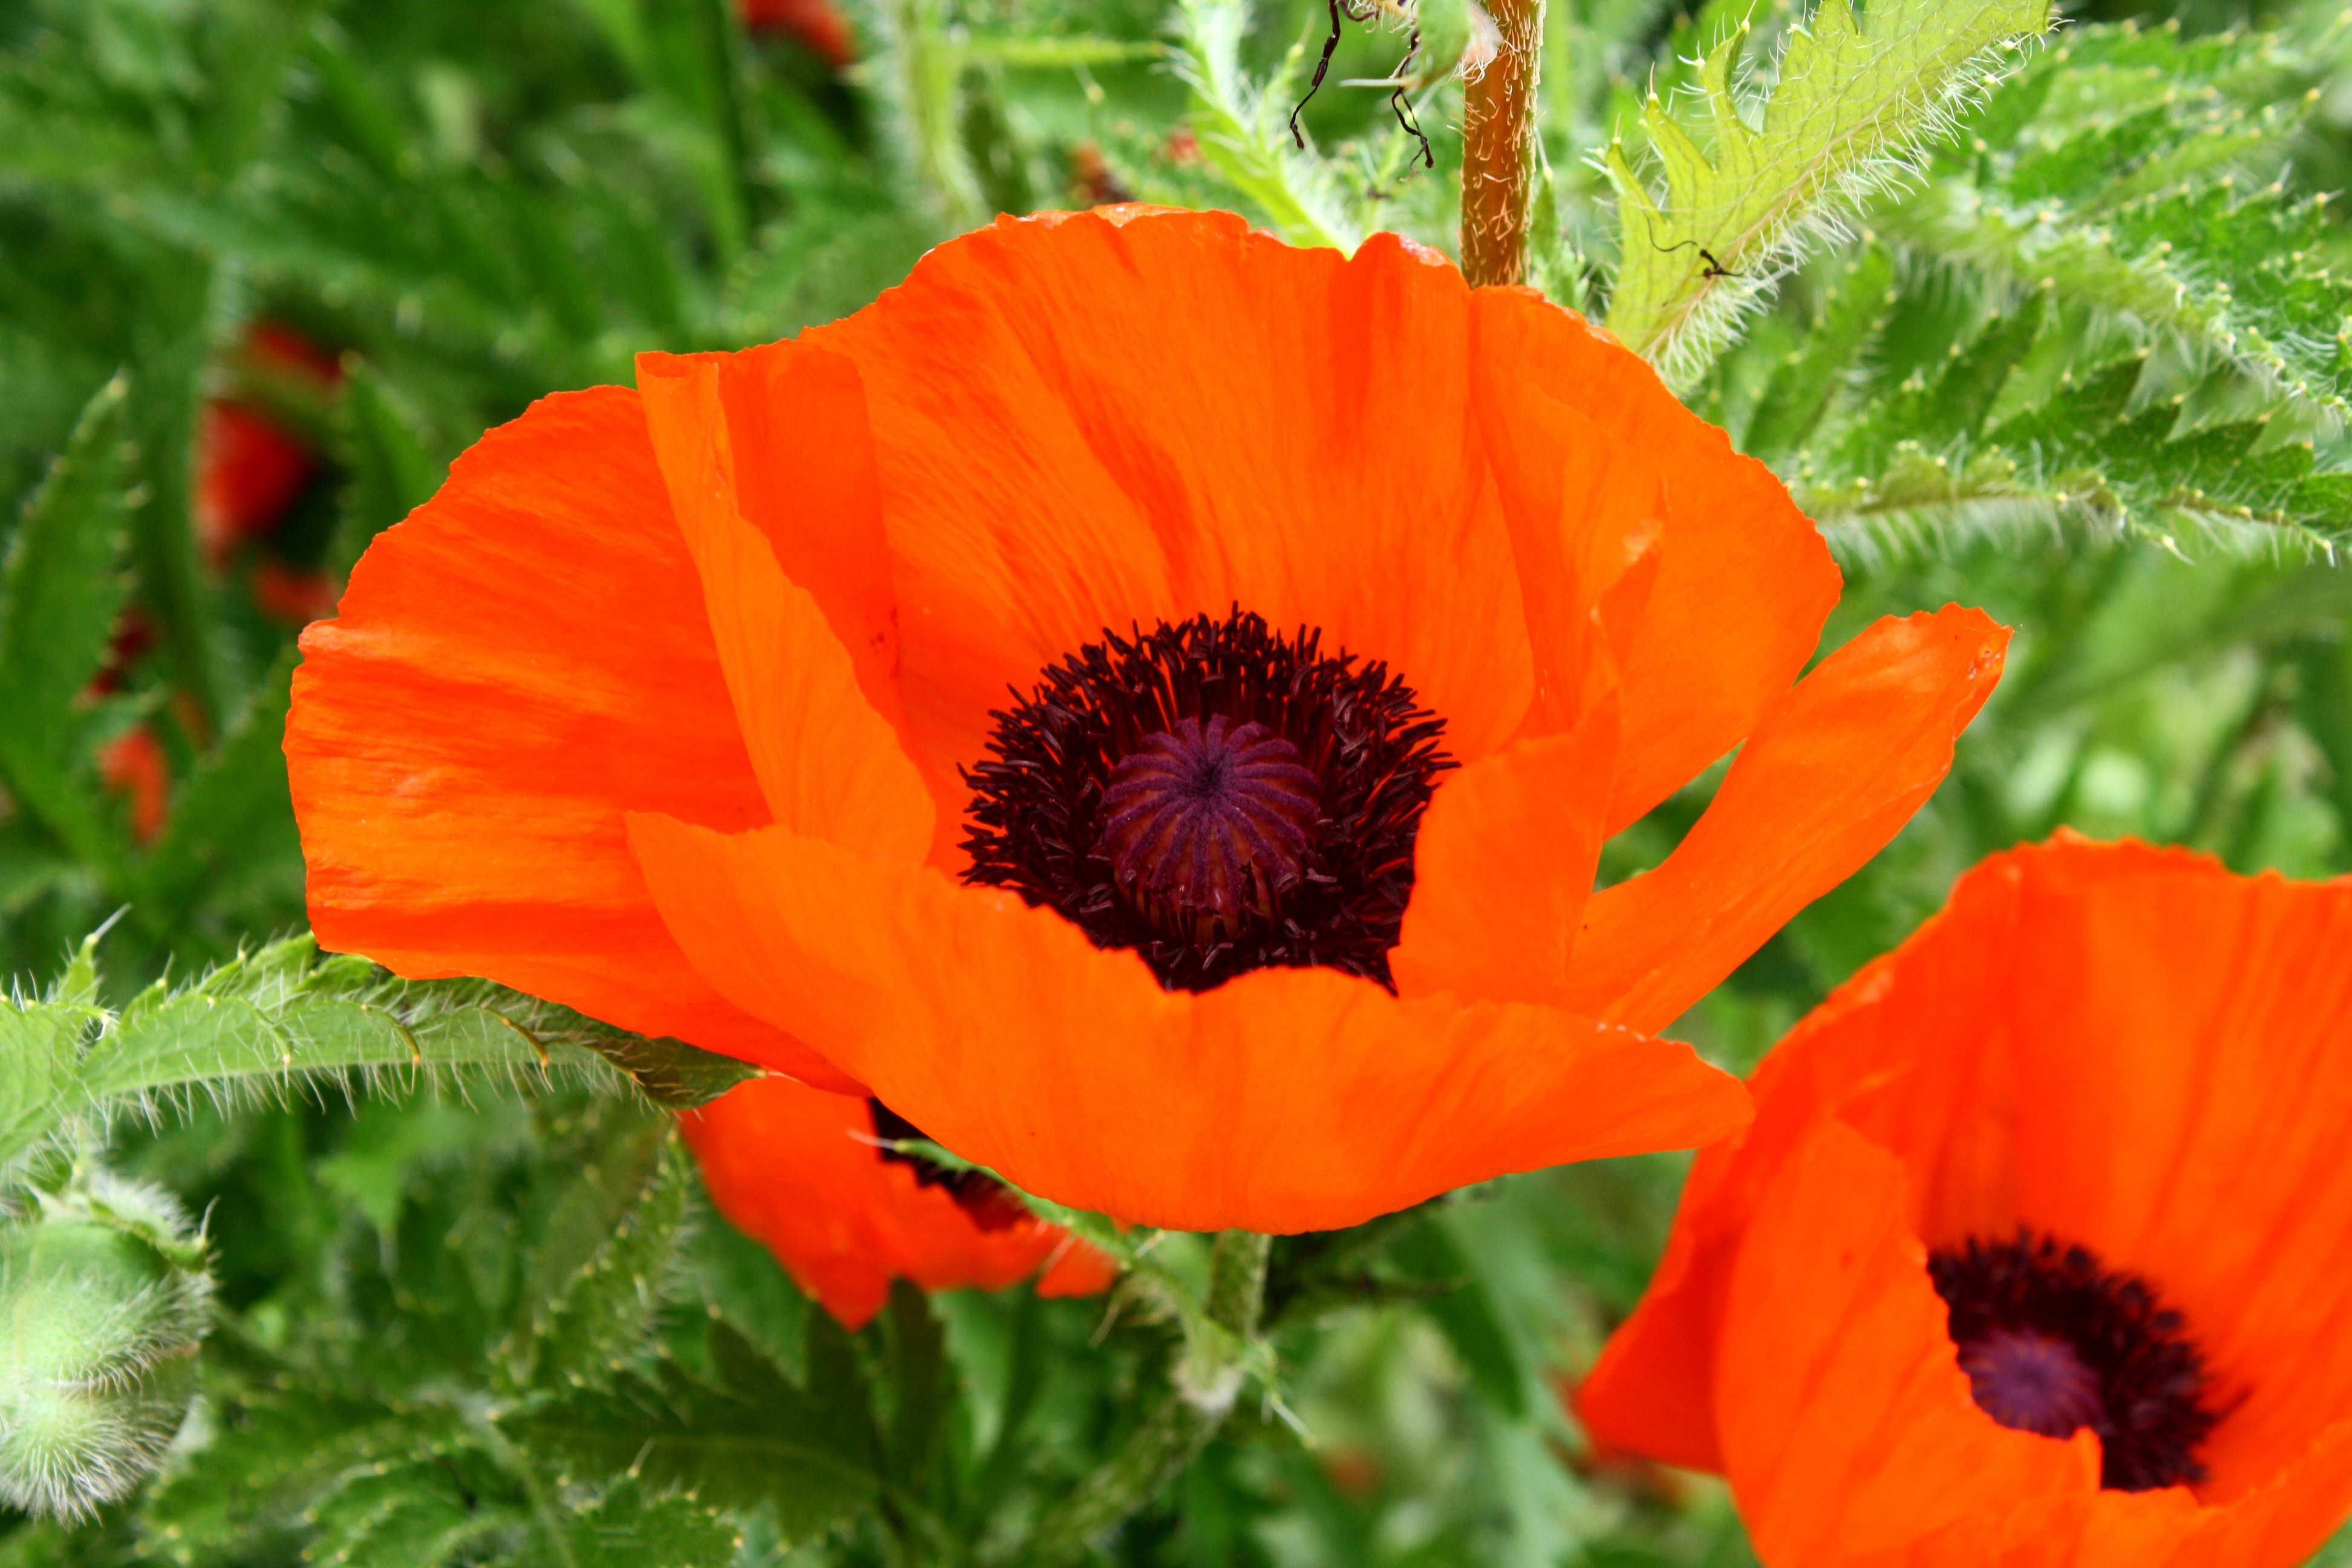 Orange Poppy Flower Picture | Free Photograph | Photos Public Domain